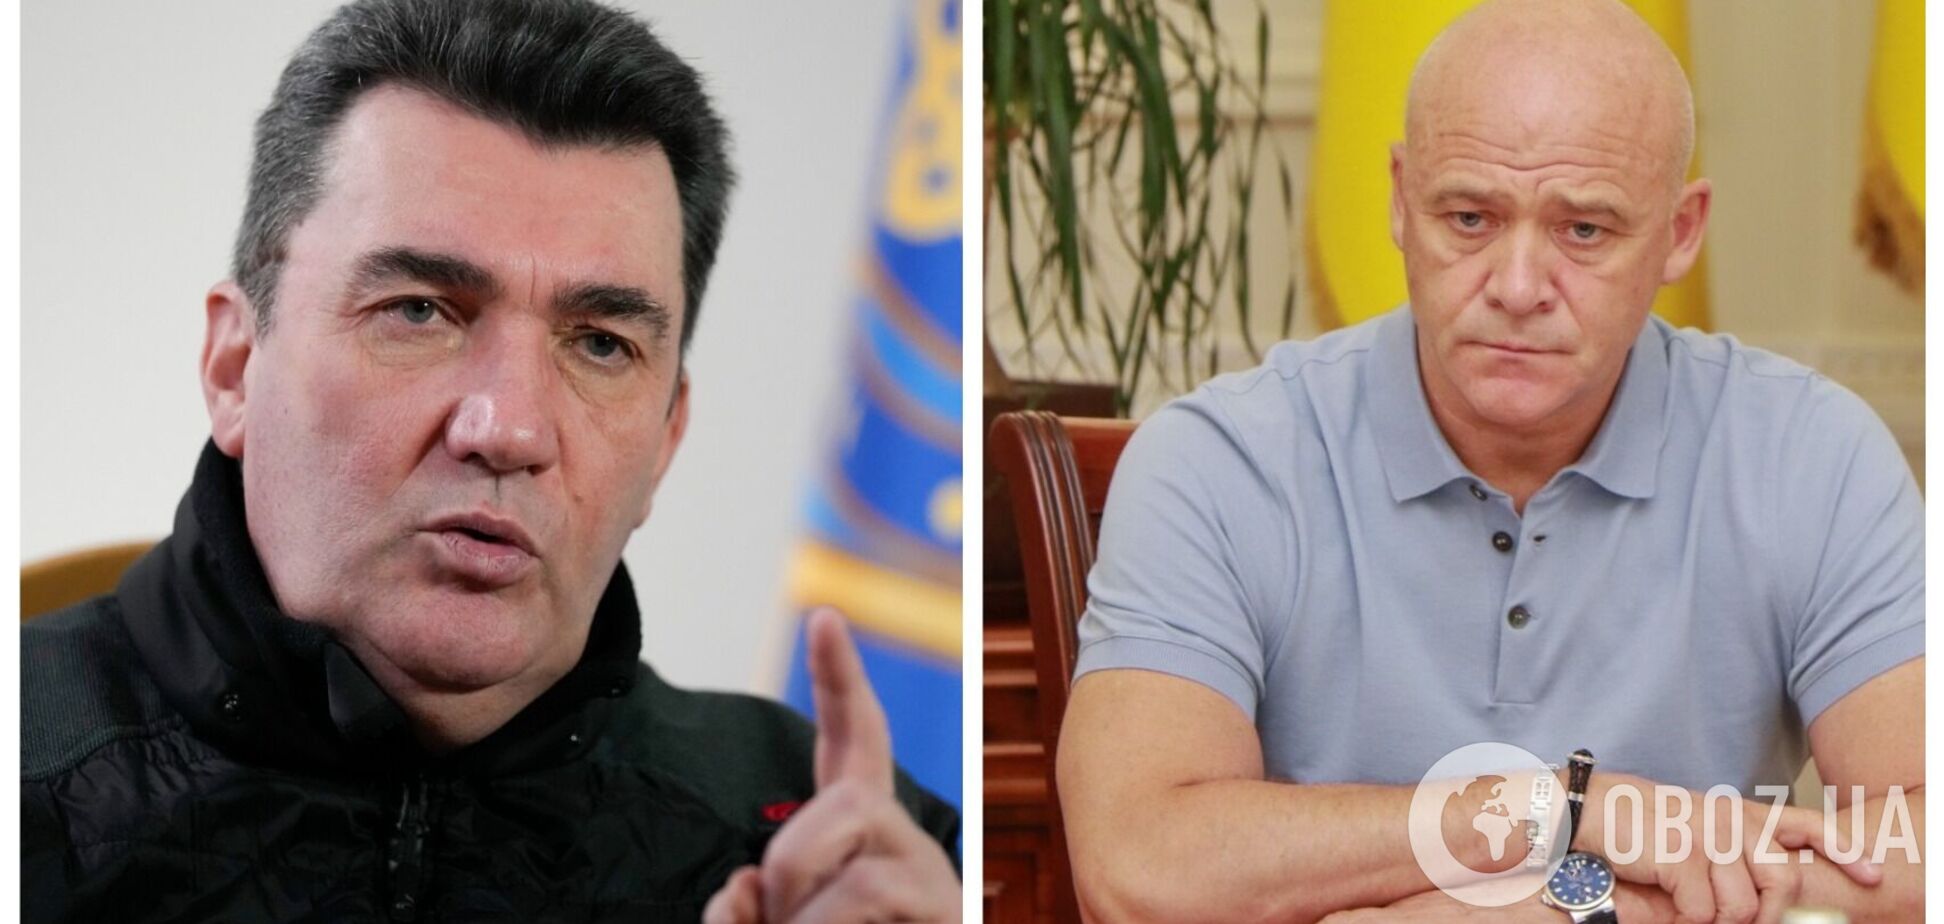 Данилов заявил, что Труханов своими заявлениями показал 'реальную политическую позицию'